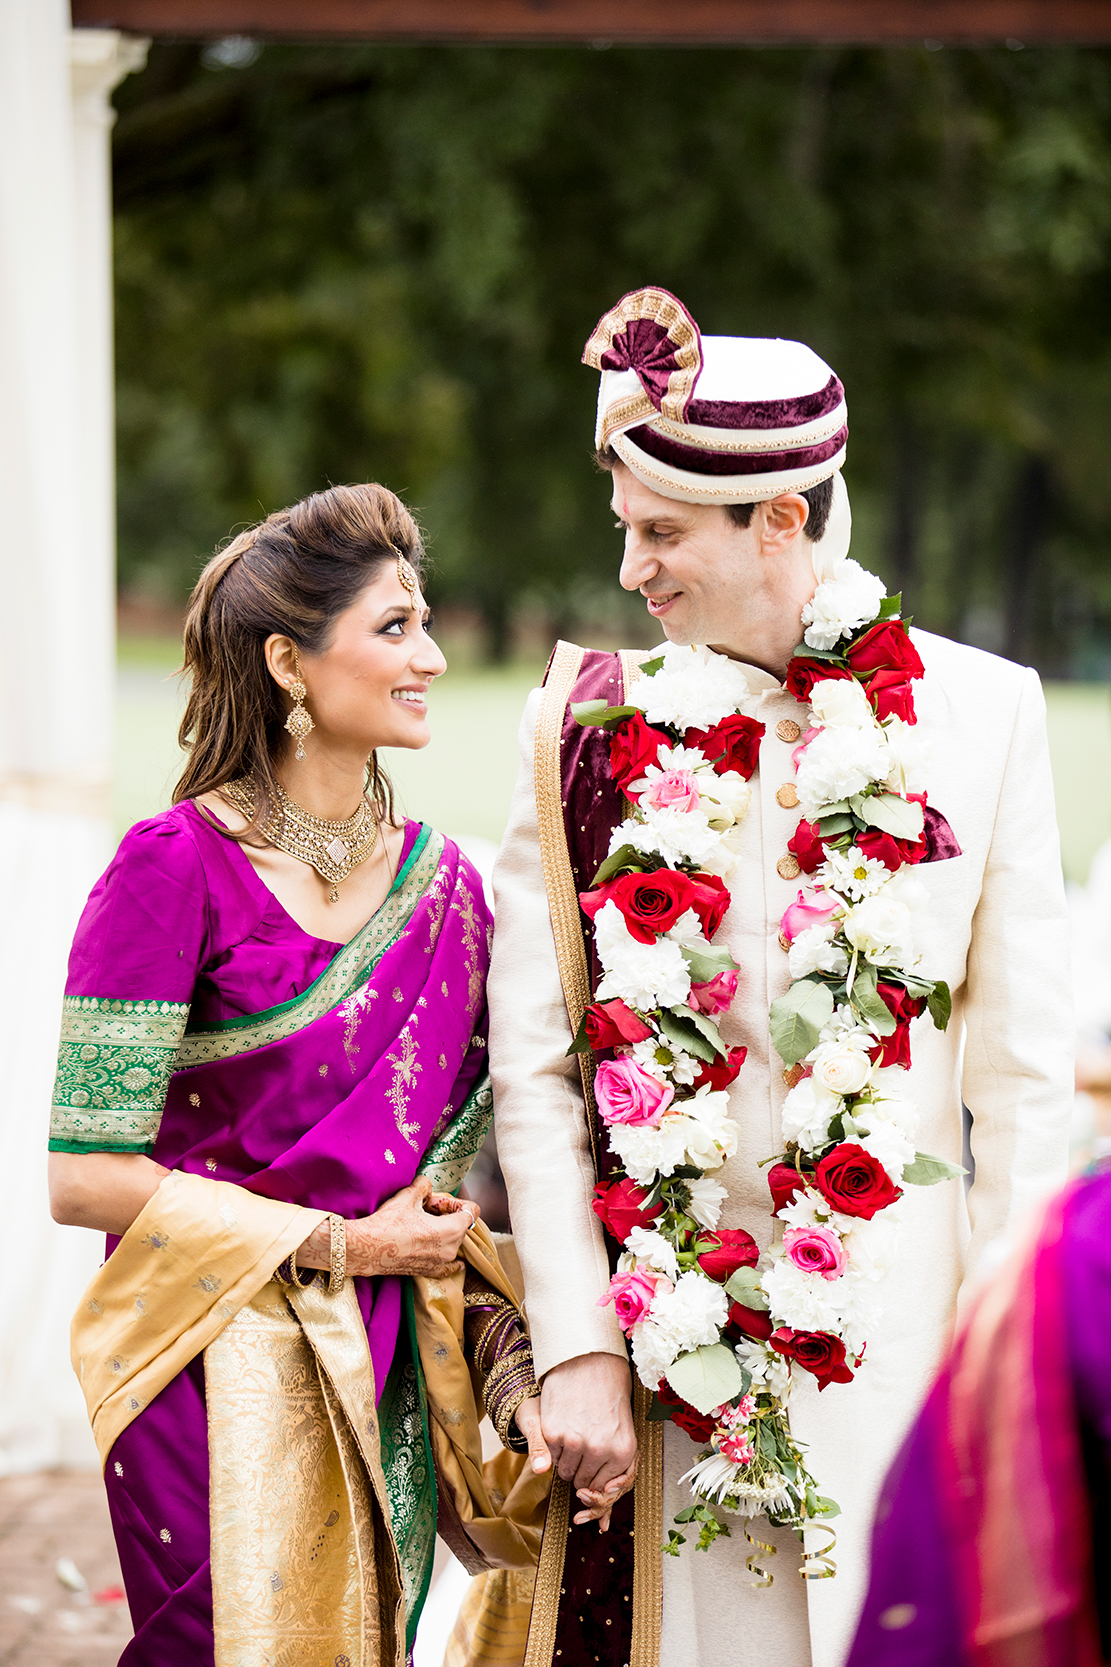 Manisha  Matts Colorful Indian Wedding - Image Property of www.j-dphoto.com